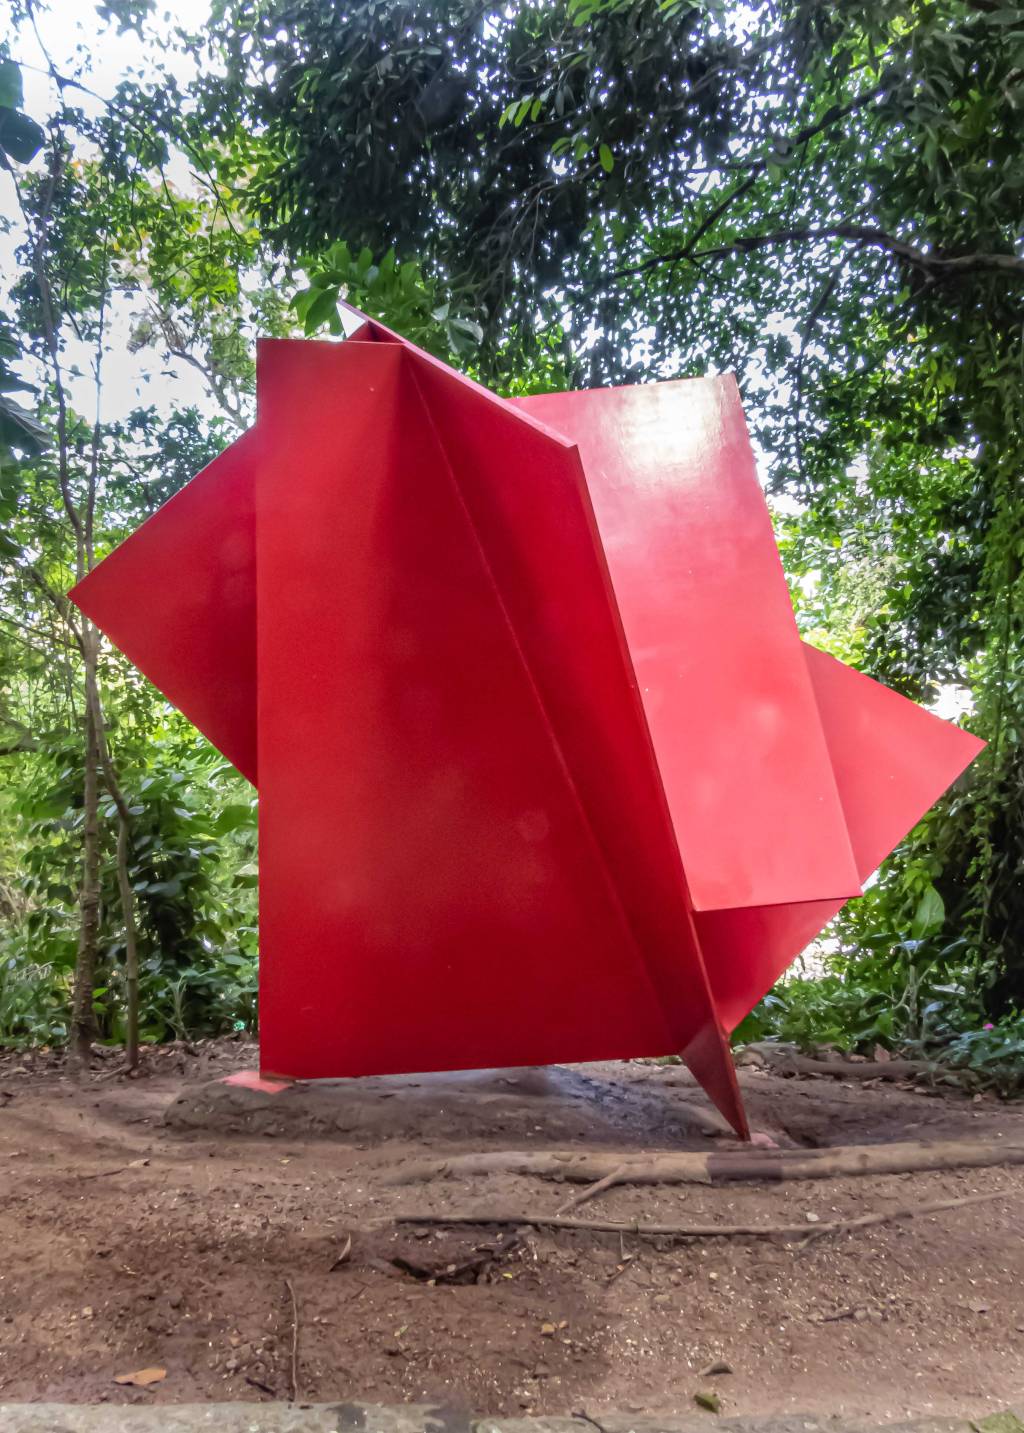 Escultura em formato gigante, com placas vermelhas, num fundo com muitas árvores